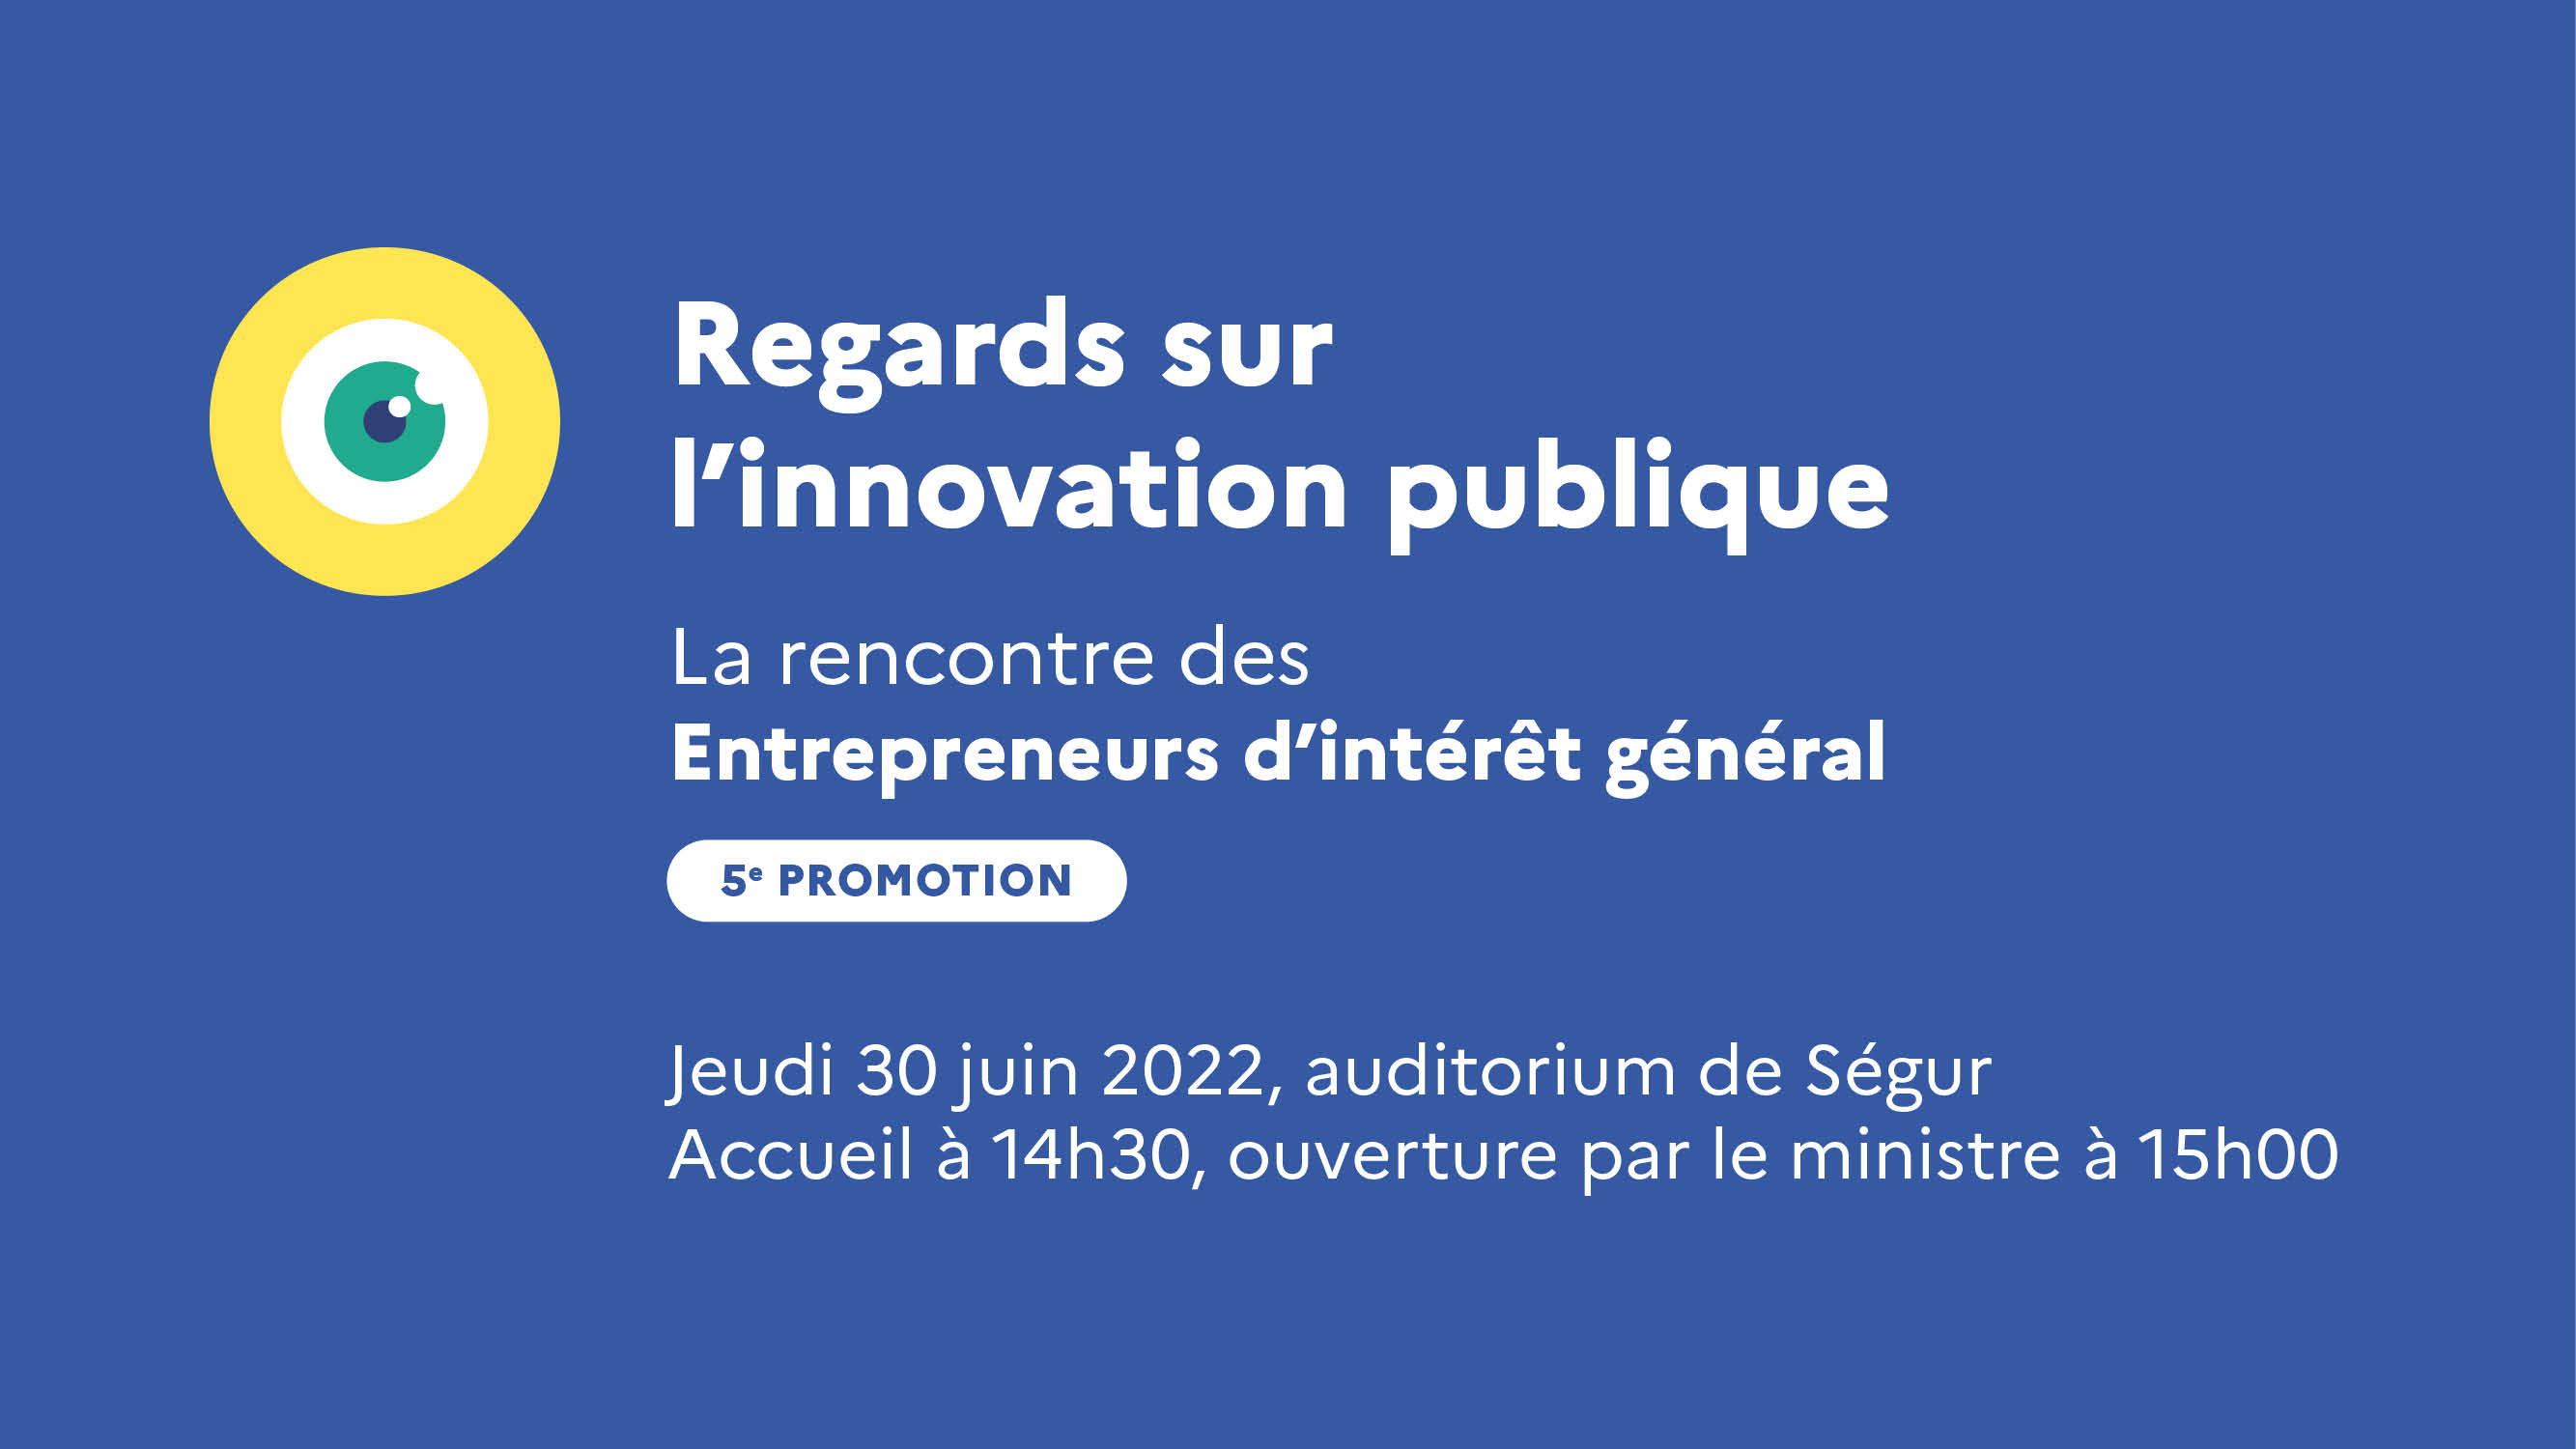 Regards sur l'innovation publique. La rencontre des Entrepreneurs d'intérêt général. 5e promotion. Jeudi 30 juin 2022, auditorium de Ségur. Accueil à 14h30, ouverture par le ministre à 15h00.